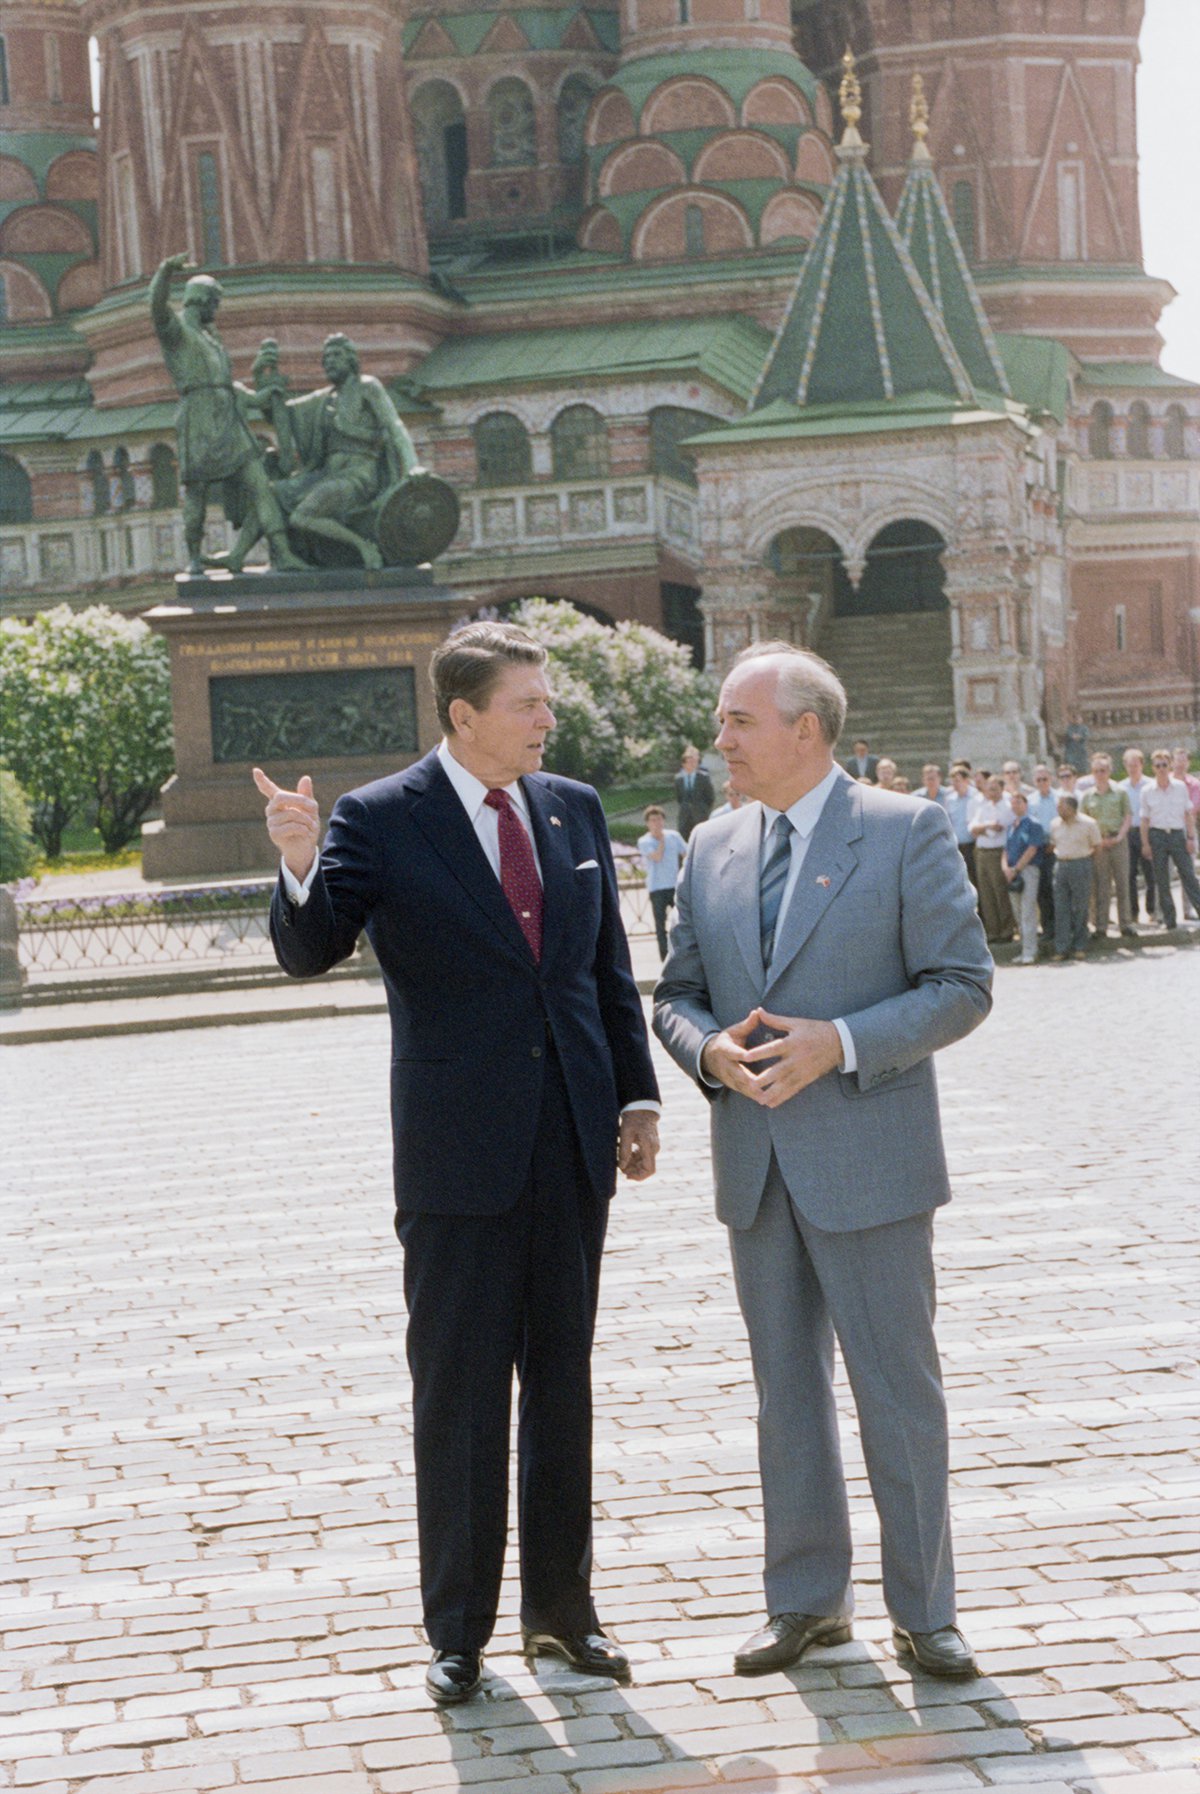 Михаил Горбачев и президент США Рональд Рейган во время прогулки по Красной площади, май 1988 года. Фото: Юрий Лизунов, Александр Чумичев / Фотохроника ТАСС